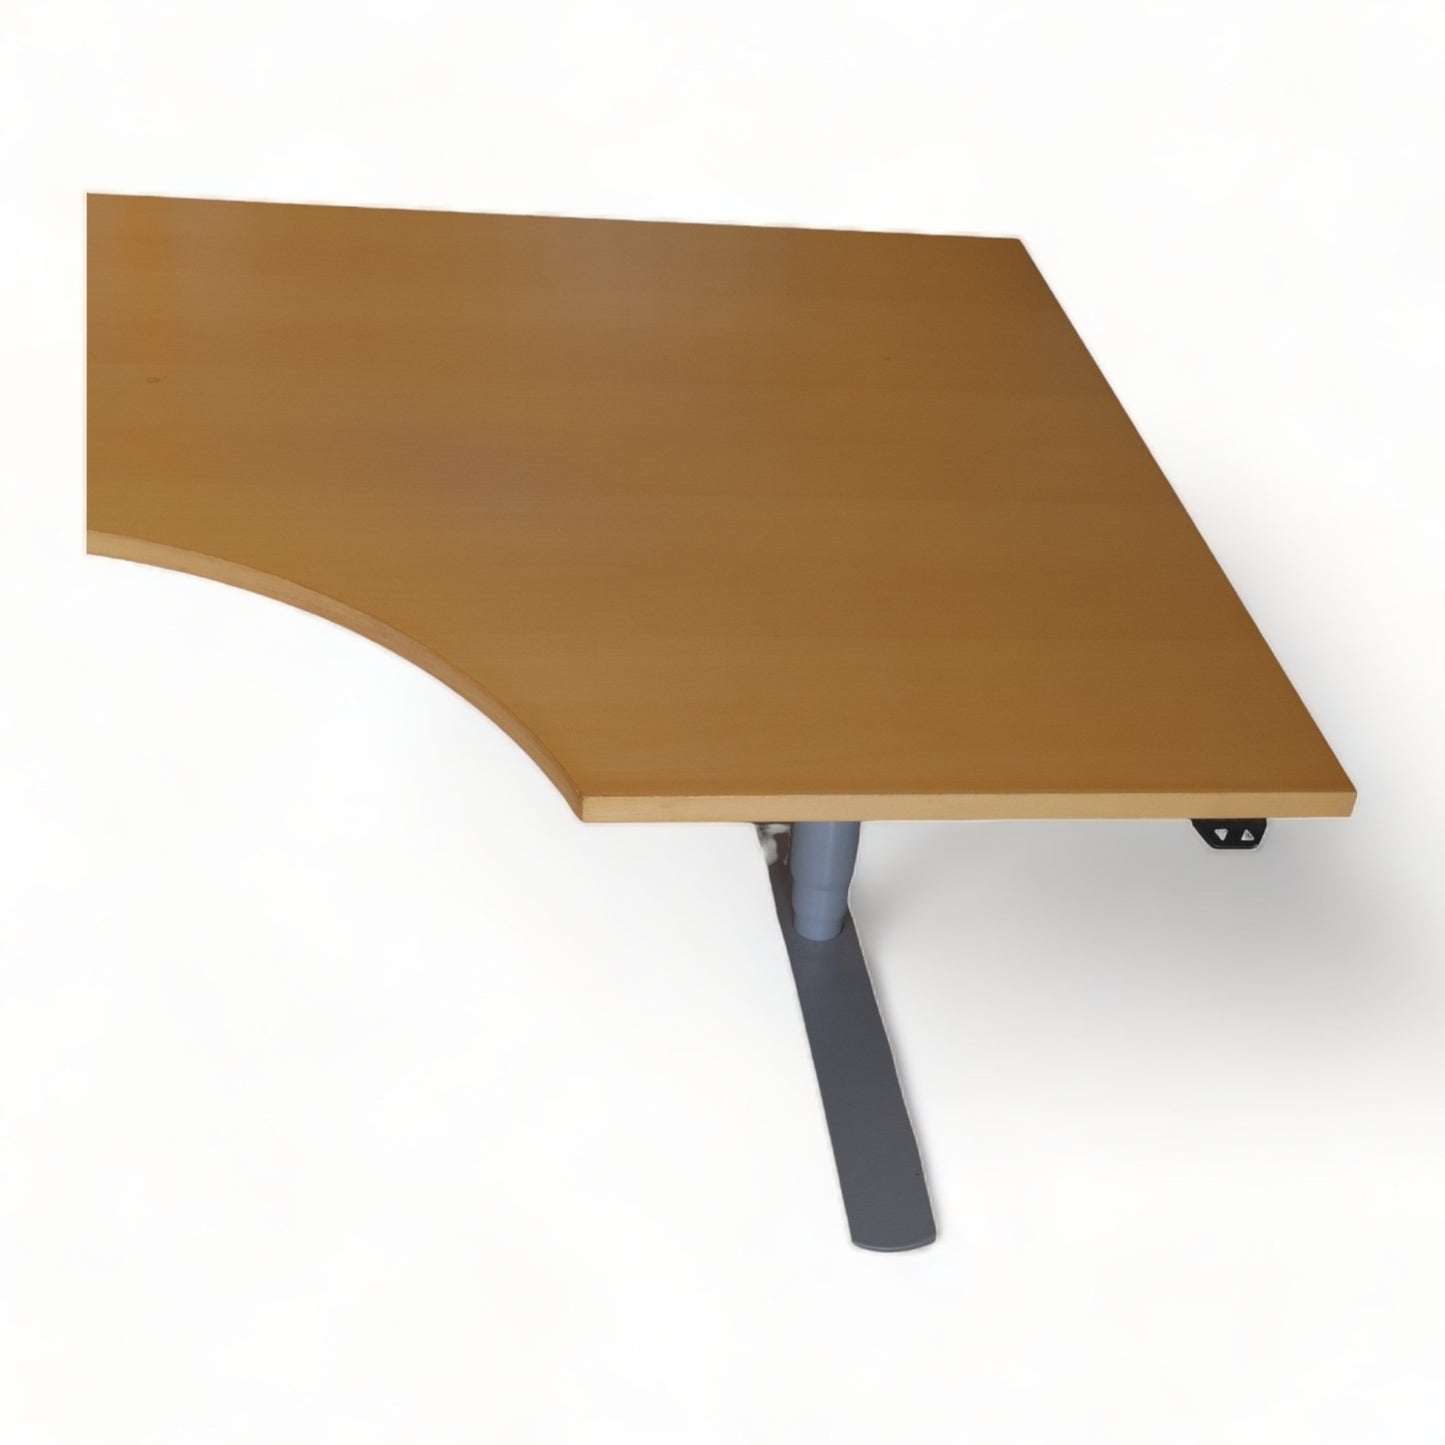 Kvalitetsikret | 260x120, elektrisk hev/senk bord med sving